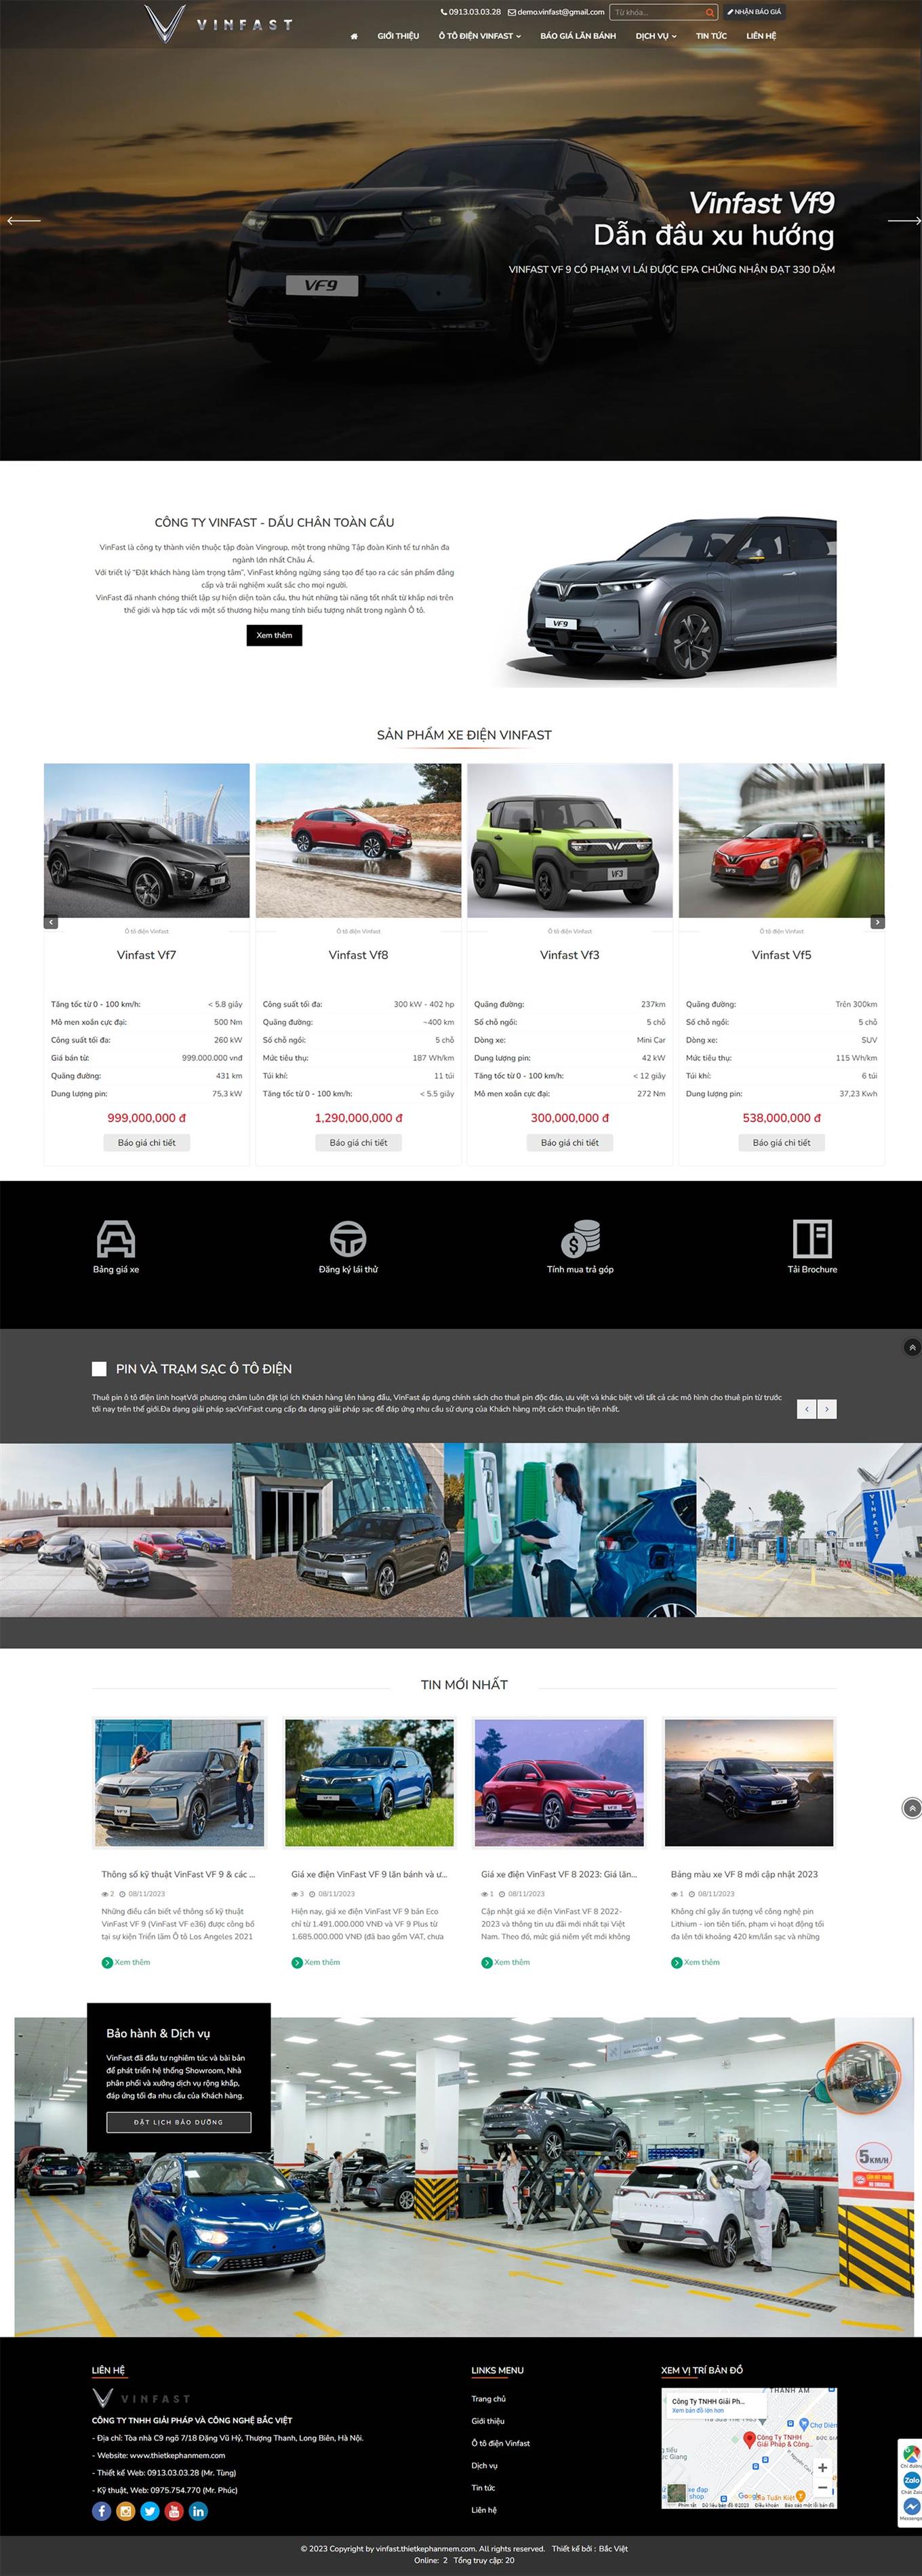 Mẫu web giới thiệu kinh doanh xe hơi hãng Vinfast